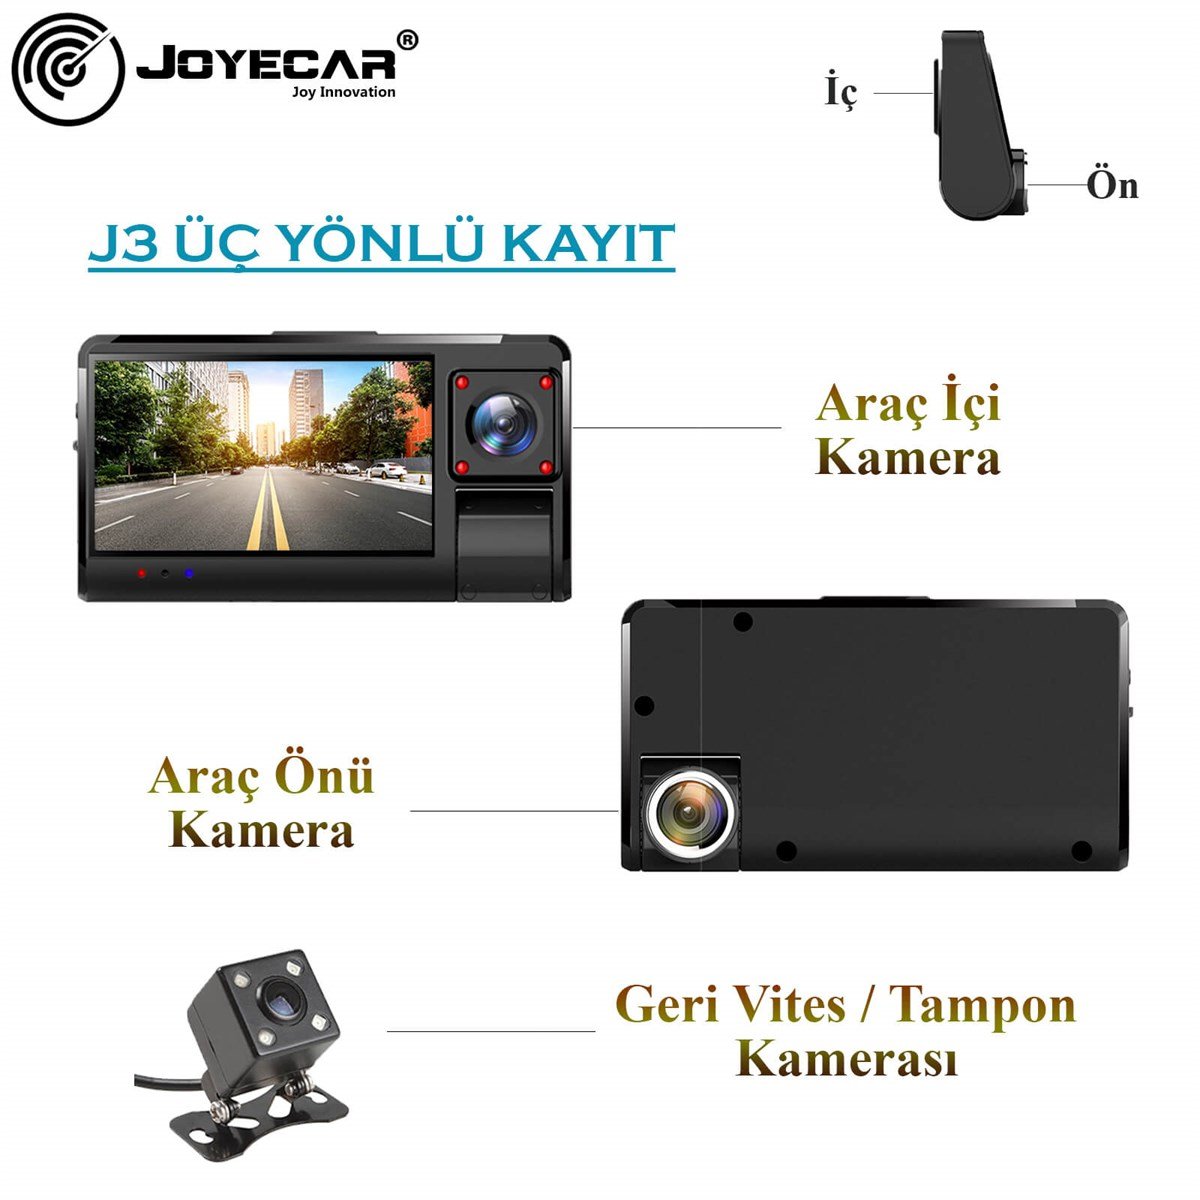 J3 Model 3 Kameralı 3 Yönlü Araç İçi Kamera - Joyecar